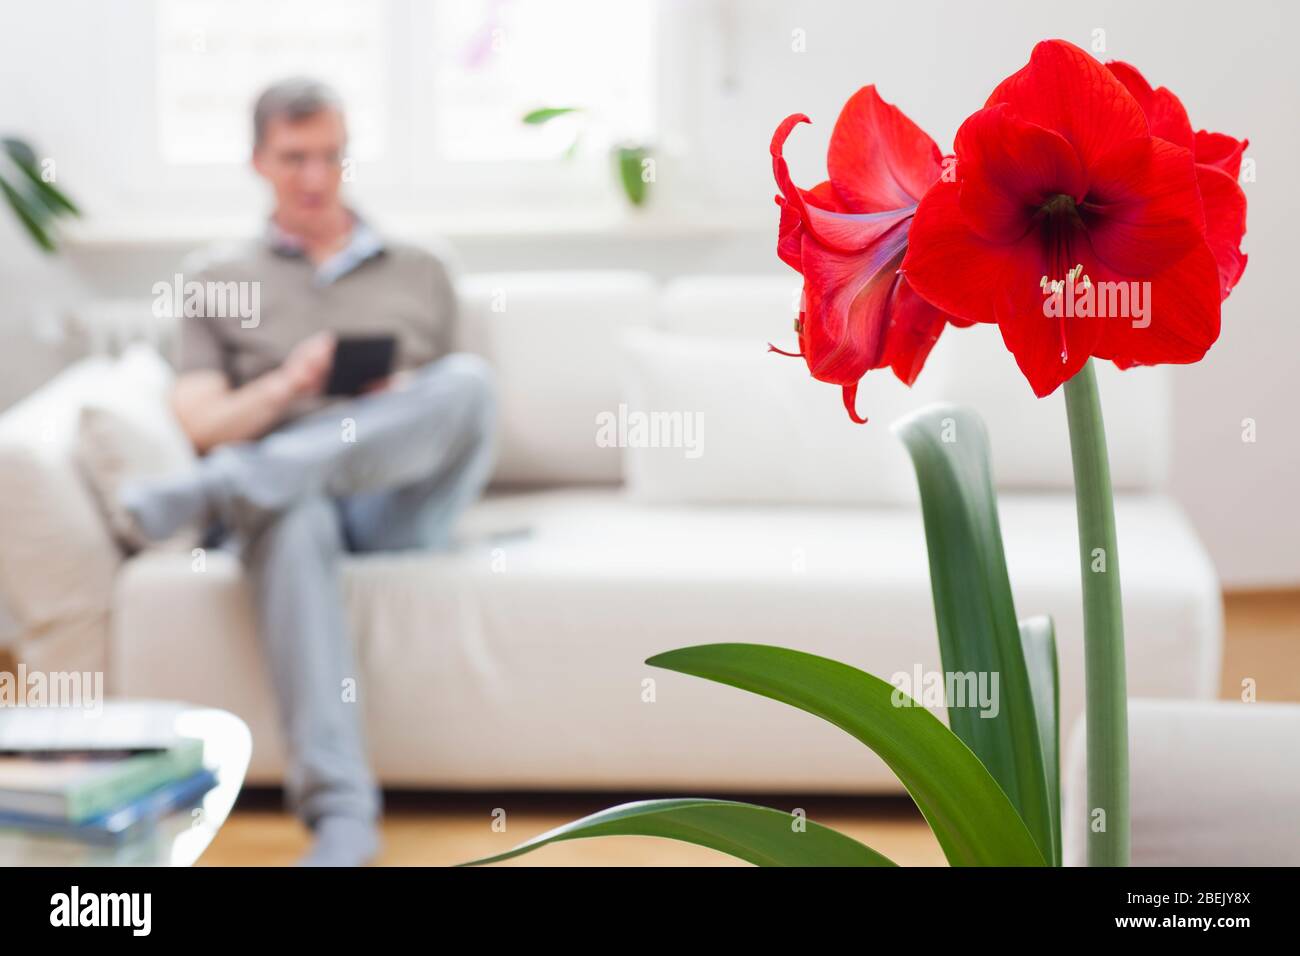 Reifer Mann, der auf einem Tablet oder E-Book sitzt, während er auf einer Couch in einem hellen Wohnzimmer zu Hause sitzt - konzentrieren Sie sich auf die rote Amaryllis Blume in der Vorahnung Stockfoto